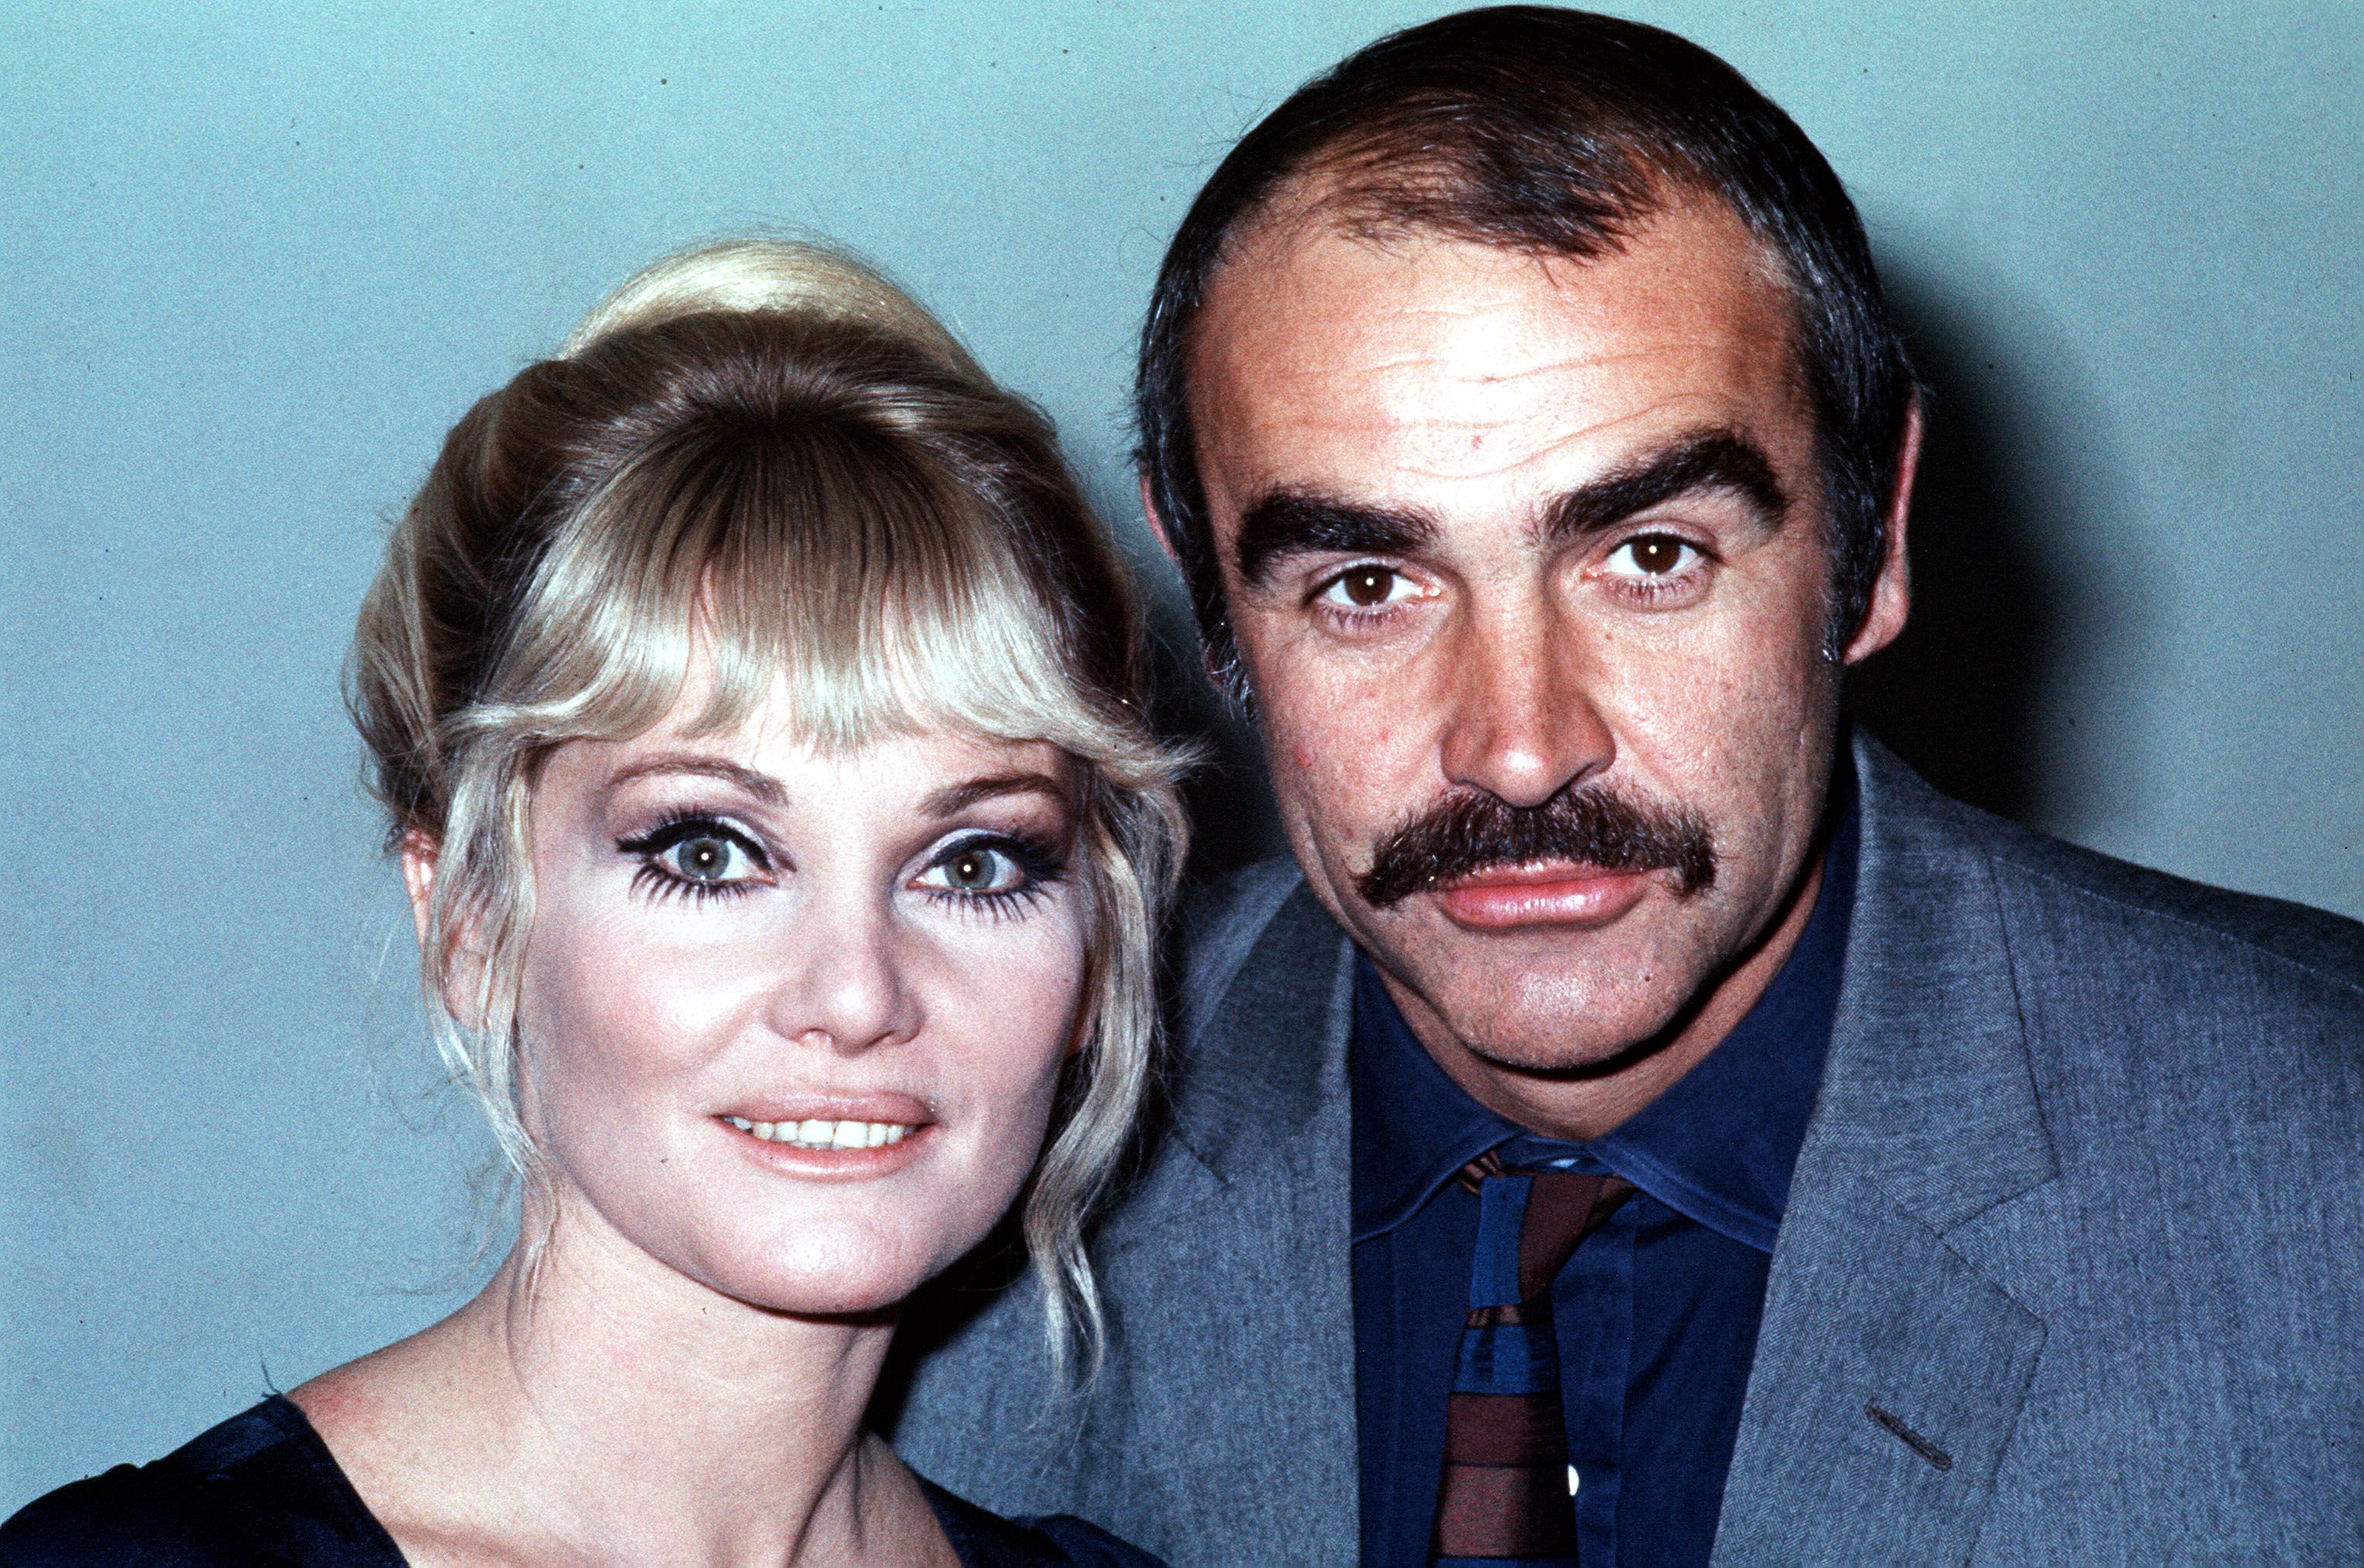 Efsanevi İskoç sinema oyuncusu Sean Connery, 1970 yılında eşi Diane Cilento ile birlikte oynadığı James Bond rolüyle en çok hatırlanıyor |  Kaynak: Getty Images 